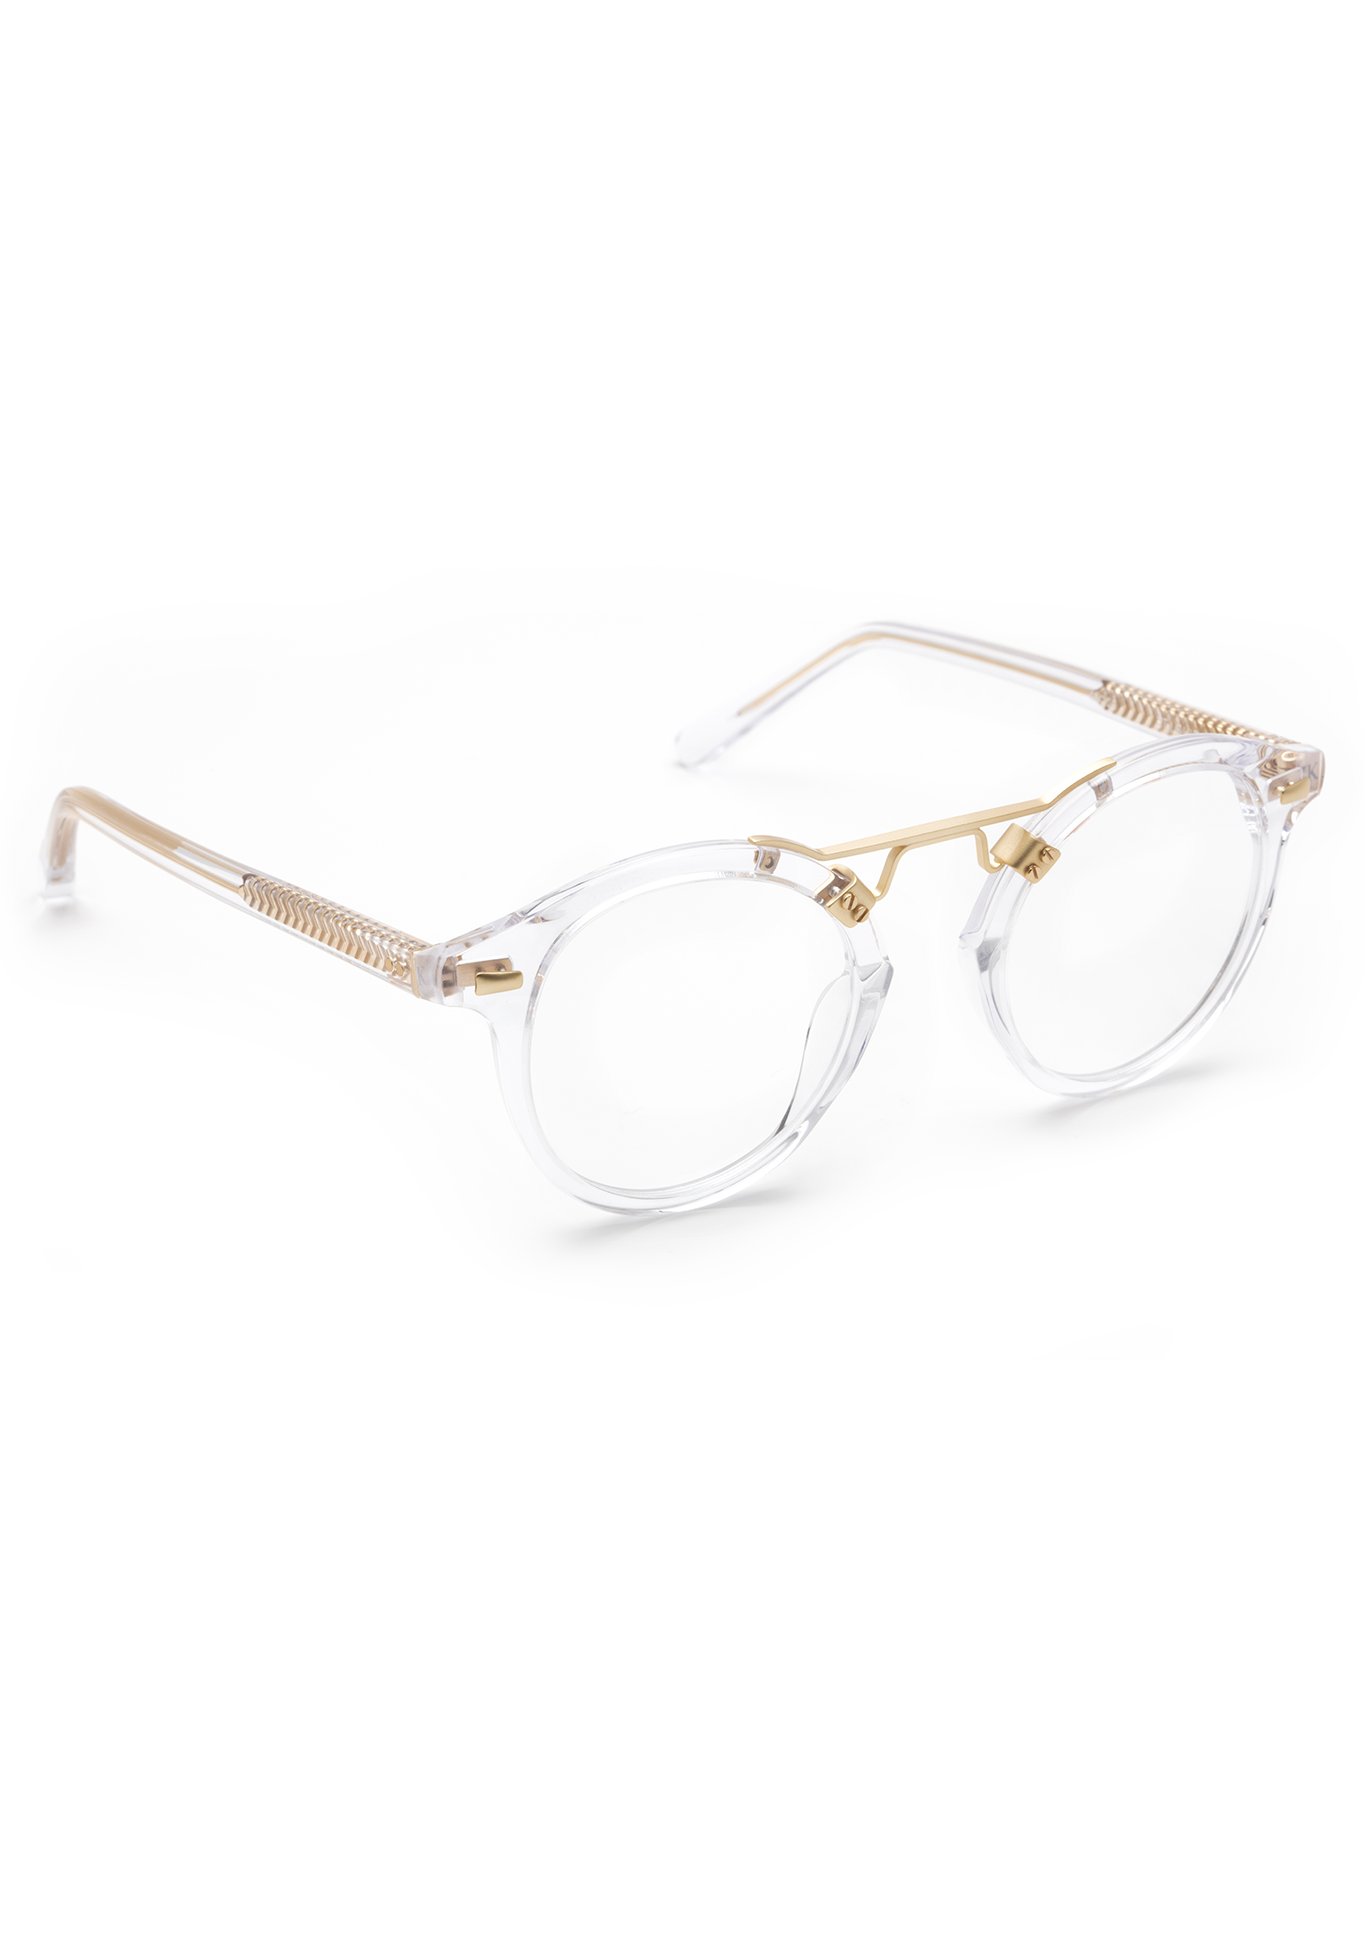 KREWE - ST. LOUIS OPTICAL | Crystal Handcrafted, Luxury Clear Acetate Eyeglasses